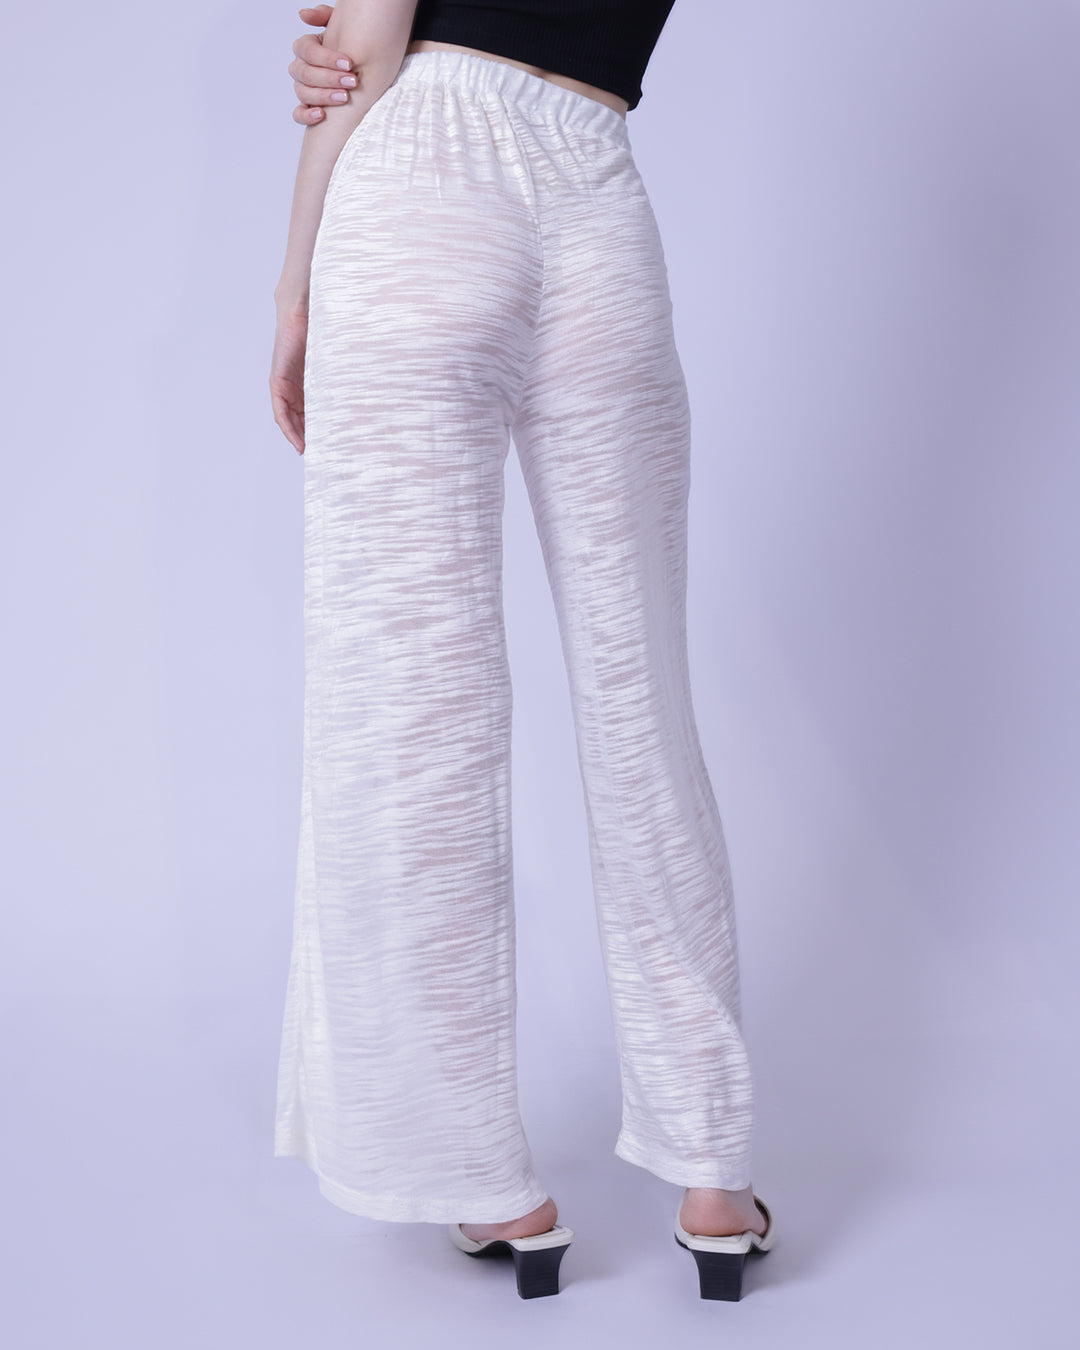 Rayon Slub Knit Semi-Sheer Cover Up Pants